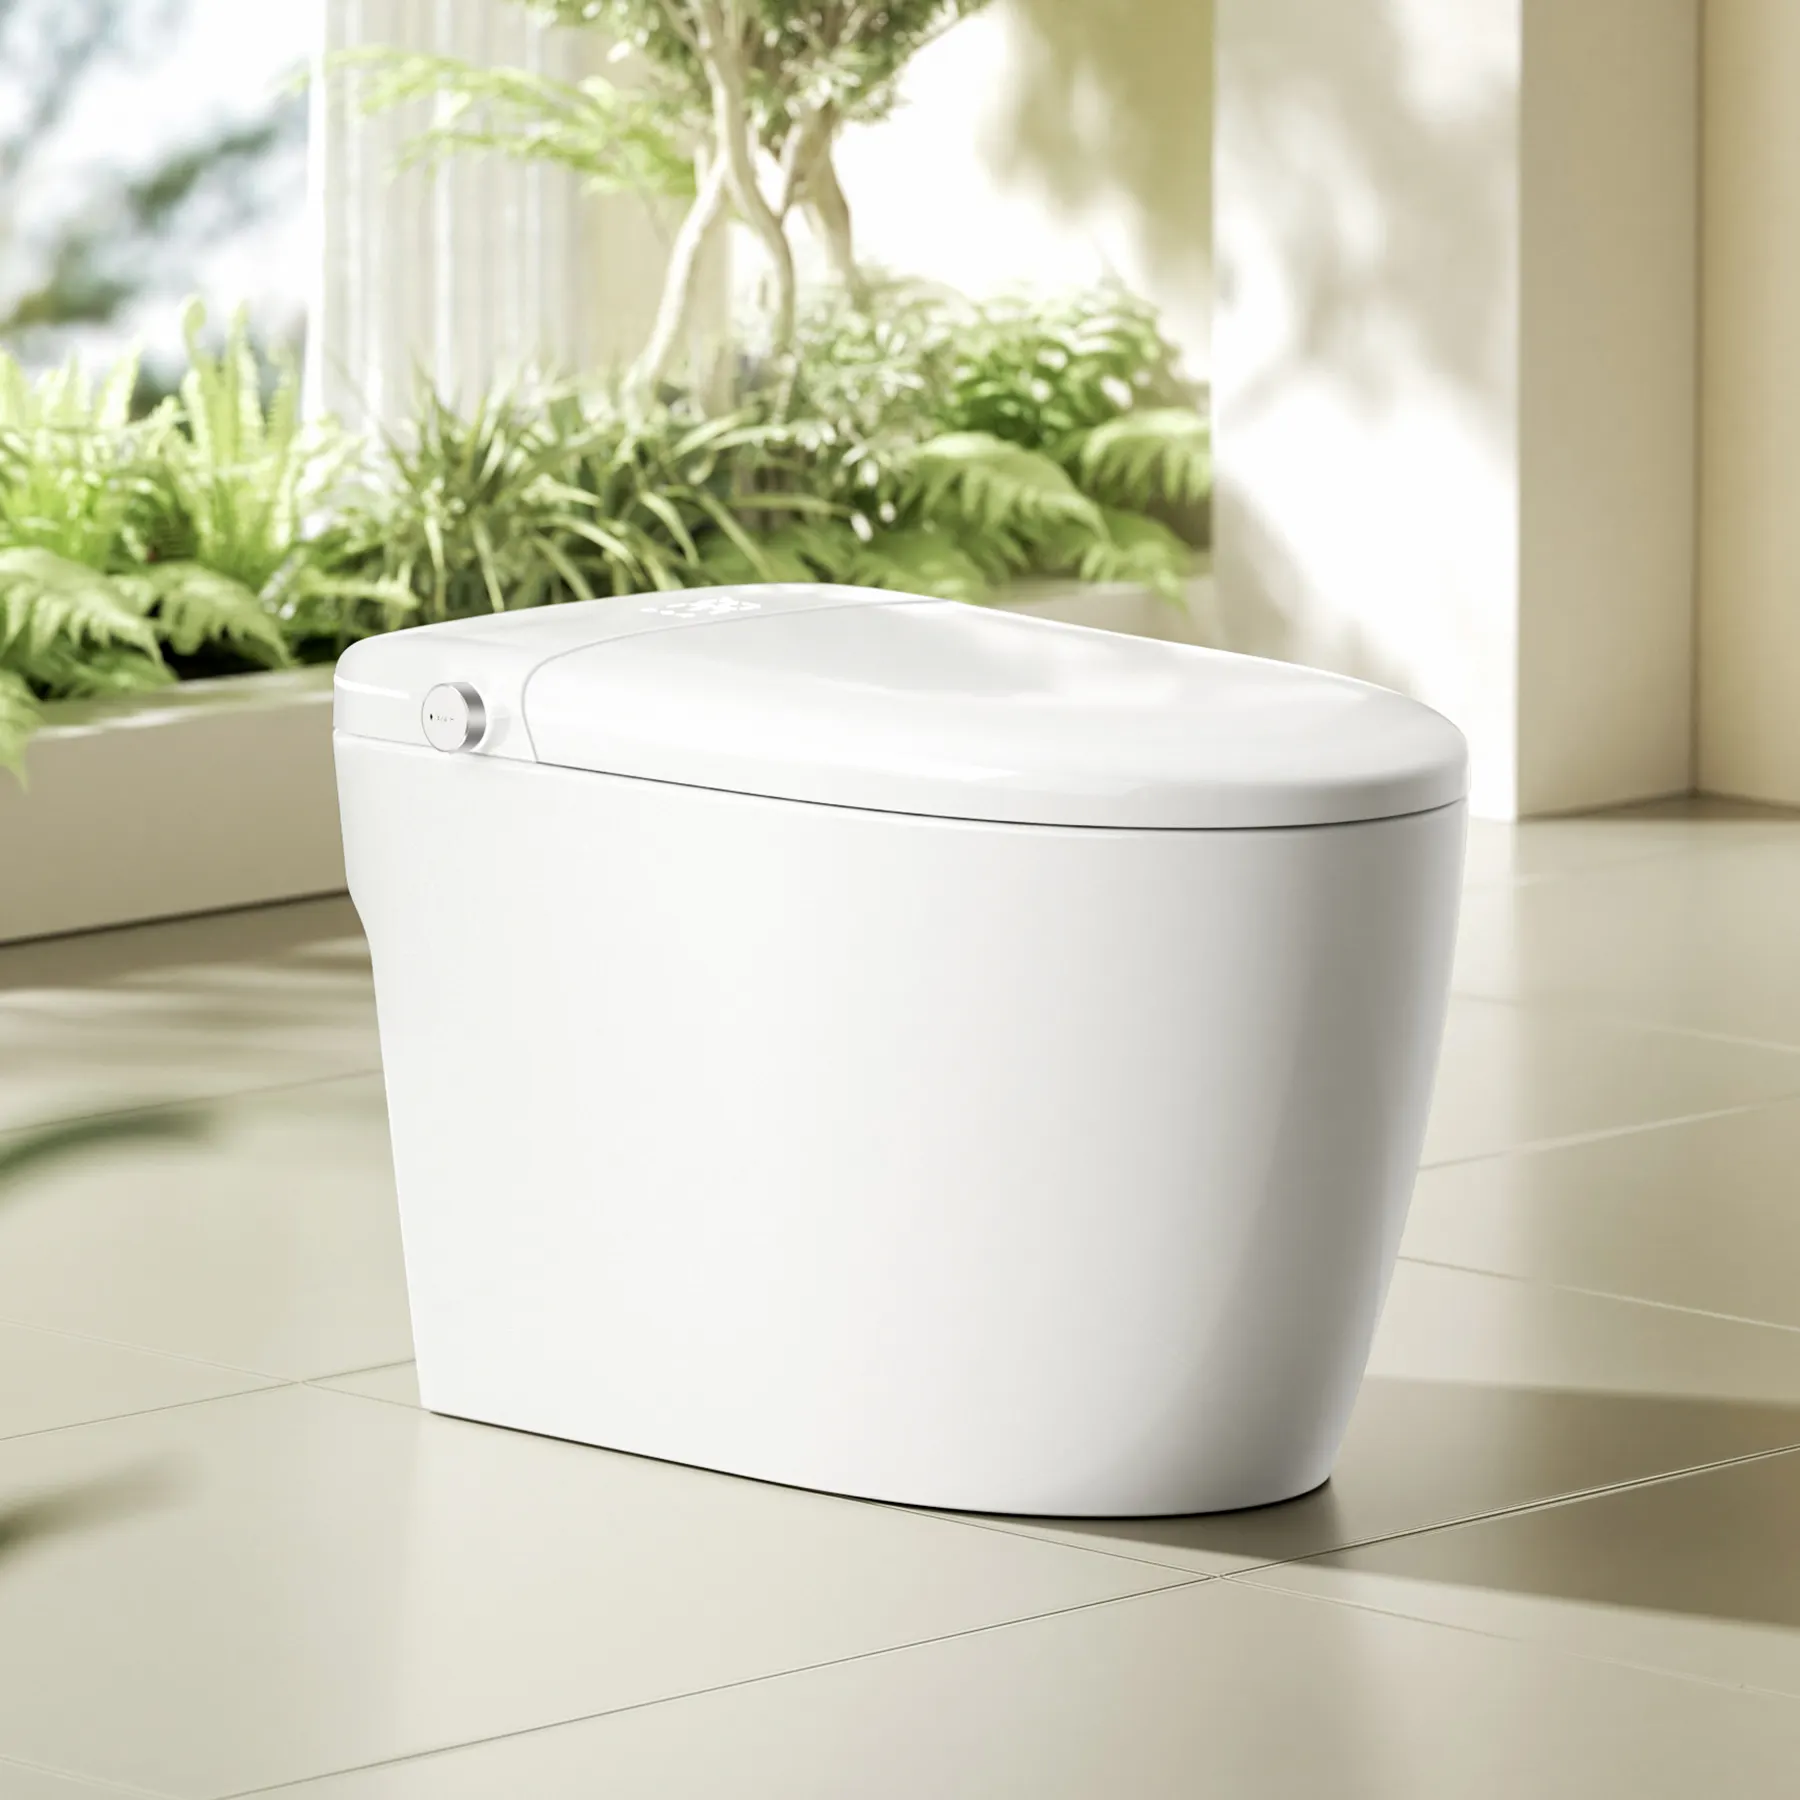 Creation Trend Wholesale Personnalisation Salle de bain au sol Toilette intelligente automatique intelligente pour hôtels et familles d'accueil